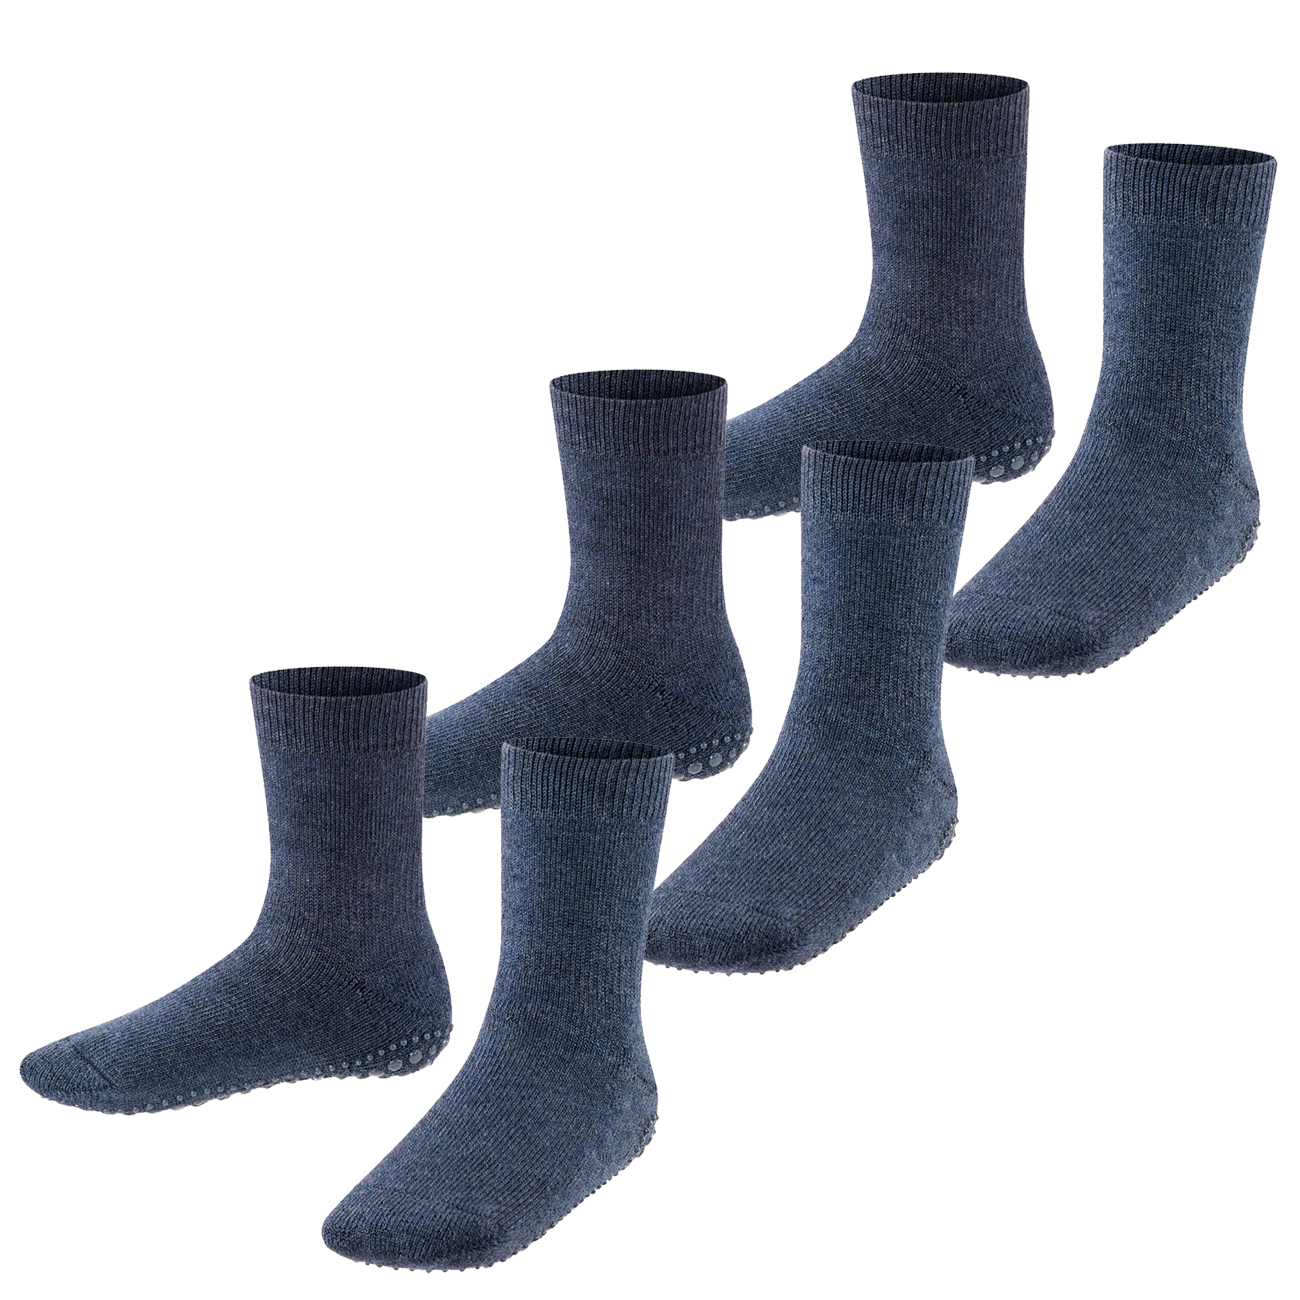 Falke Kinder Socken Catspads 2er 3er 4er Multipack Hersteller: Falke Bestellnummer:4063499025370